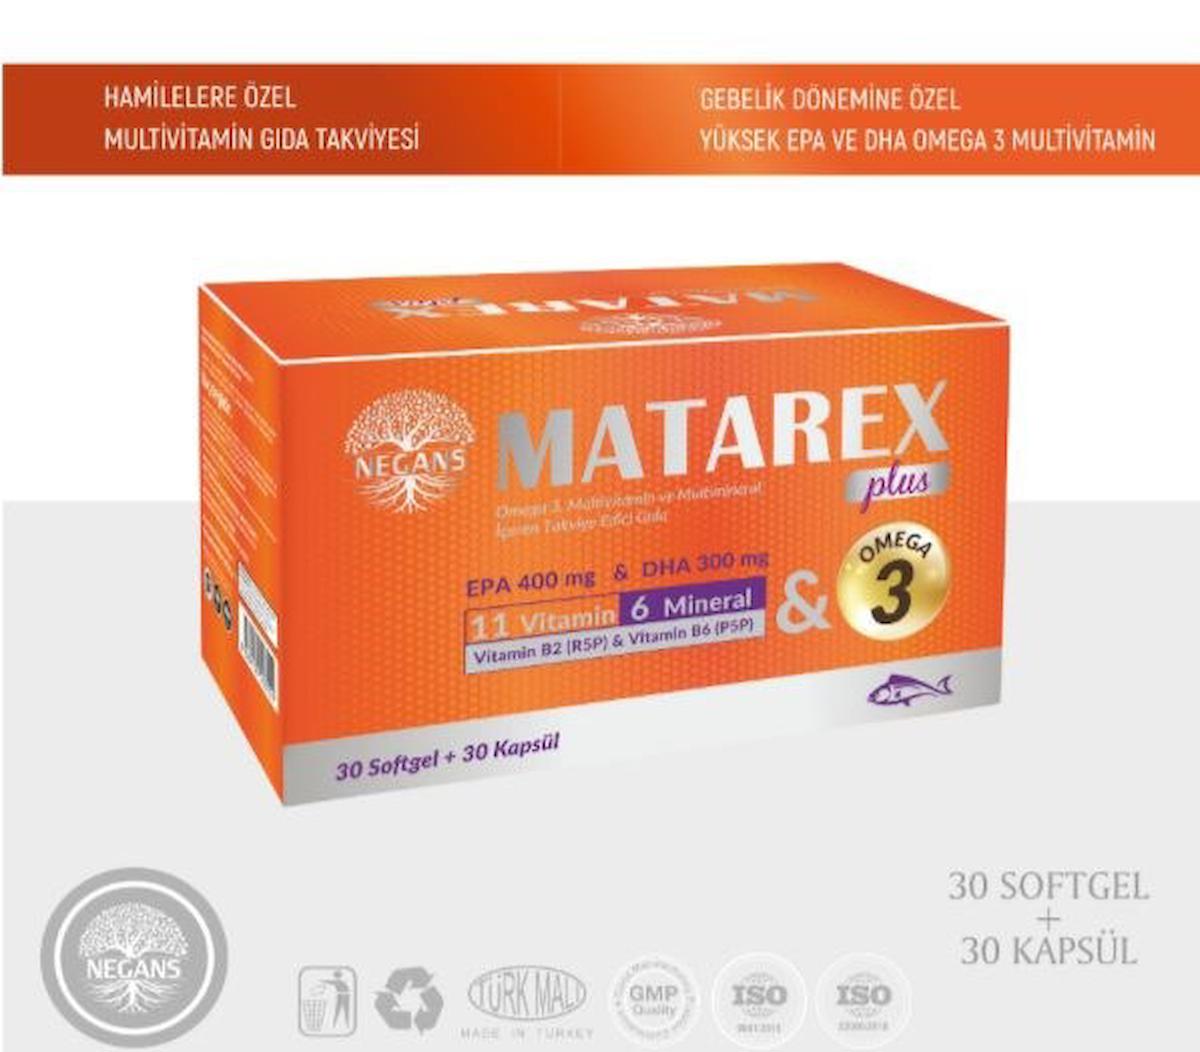 Negans Matarex Plus Sade Kadın Vitamin 30 Adet - 30 Kapsül